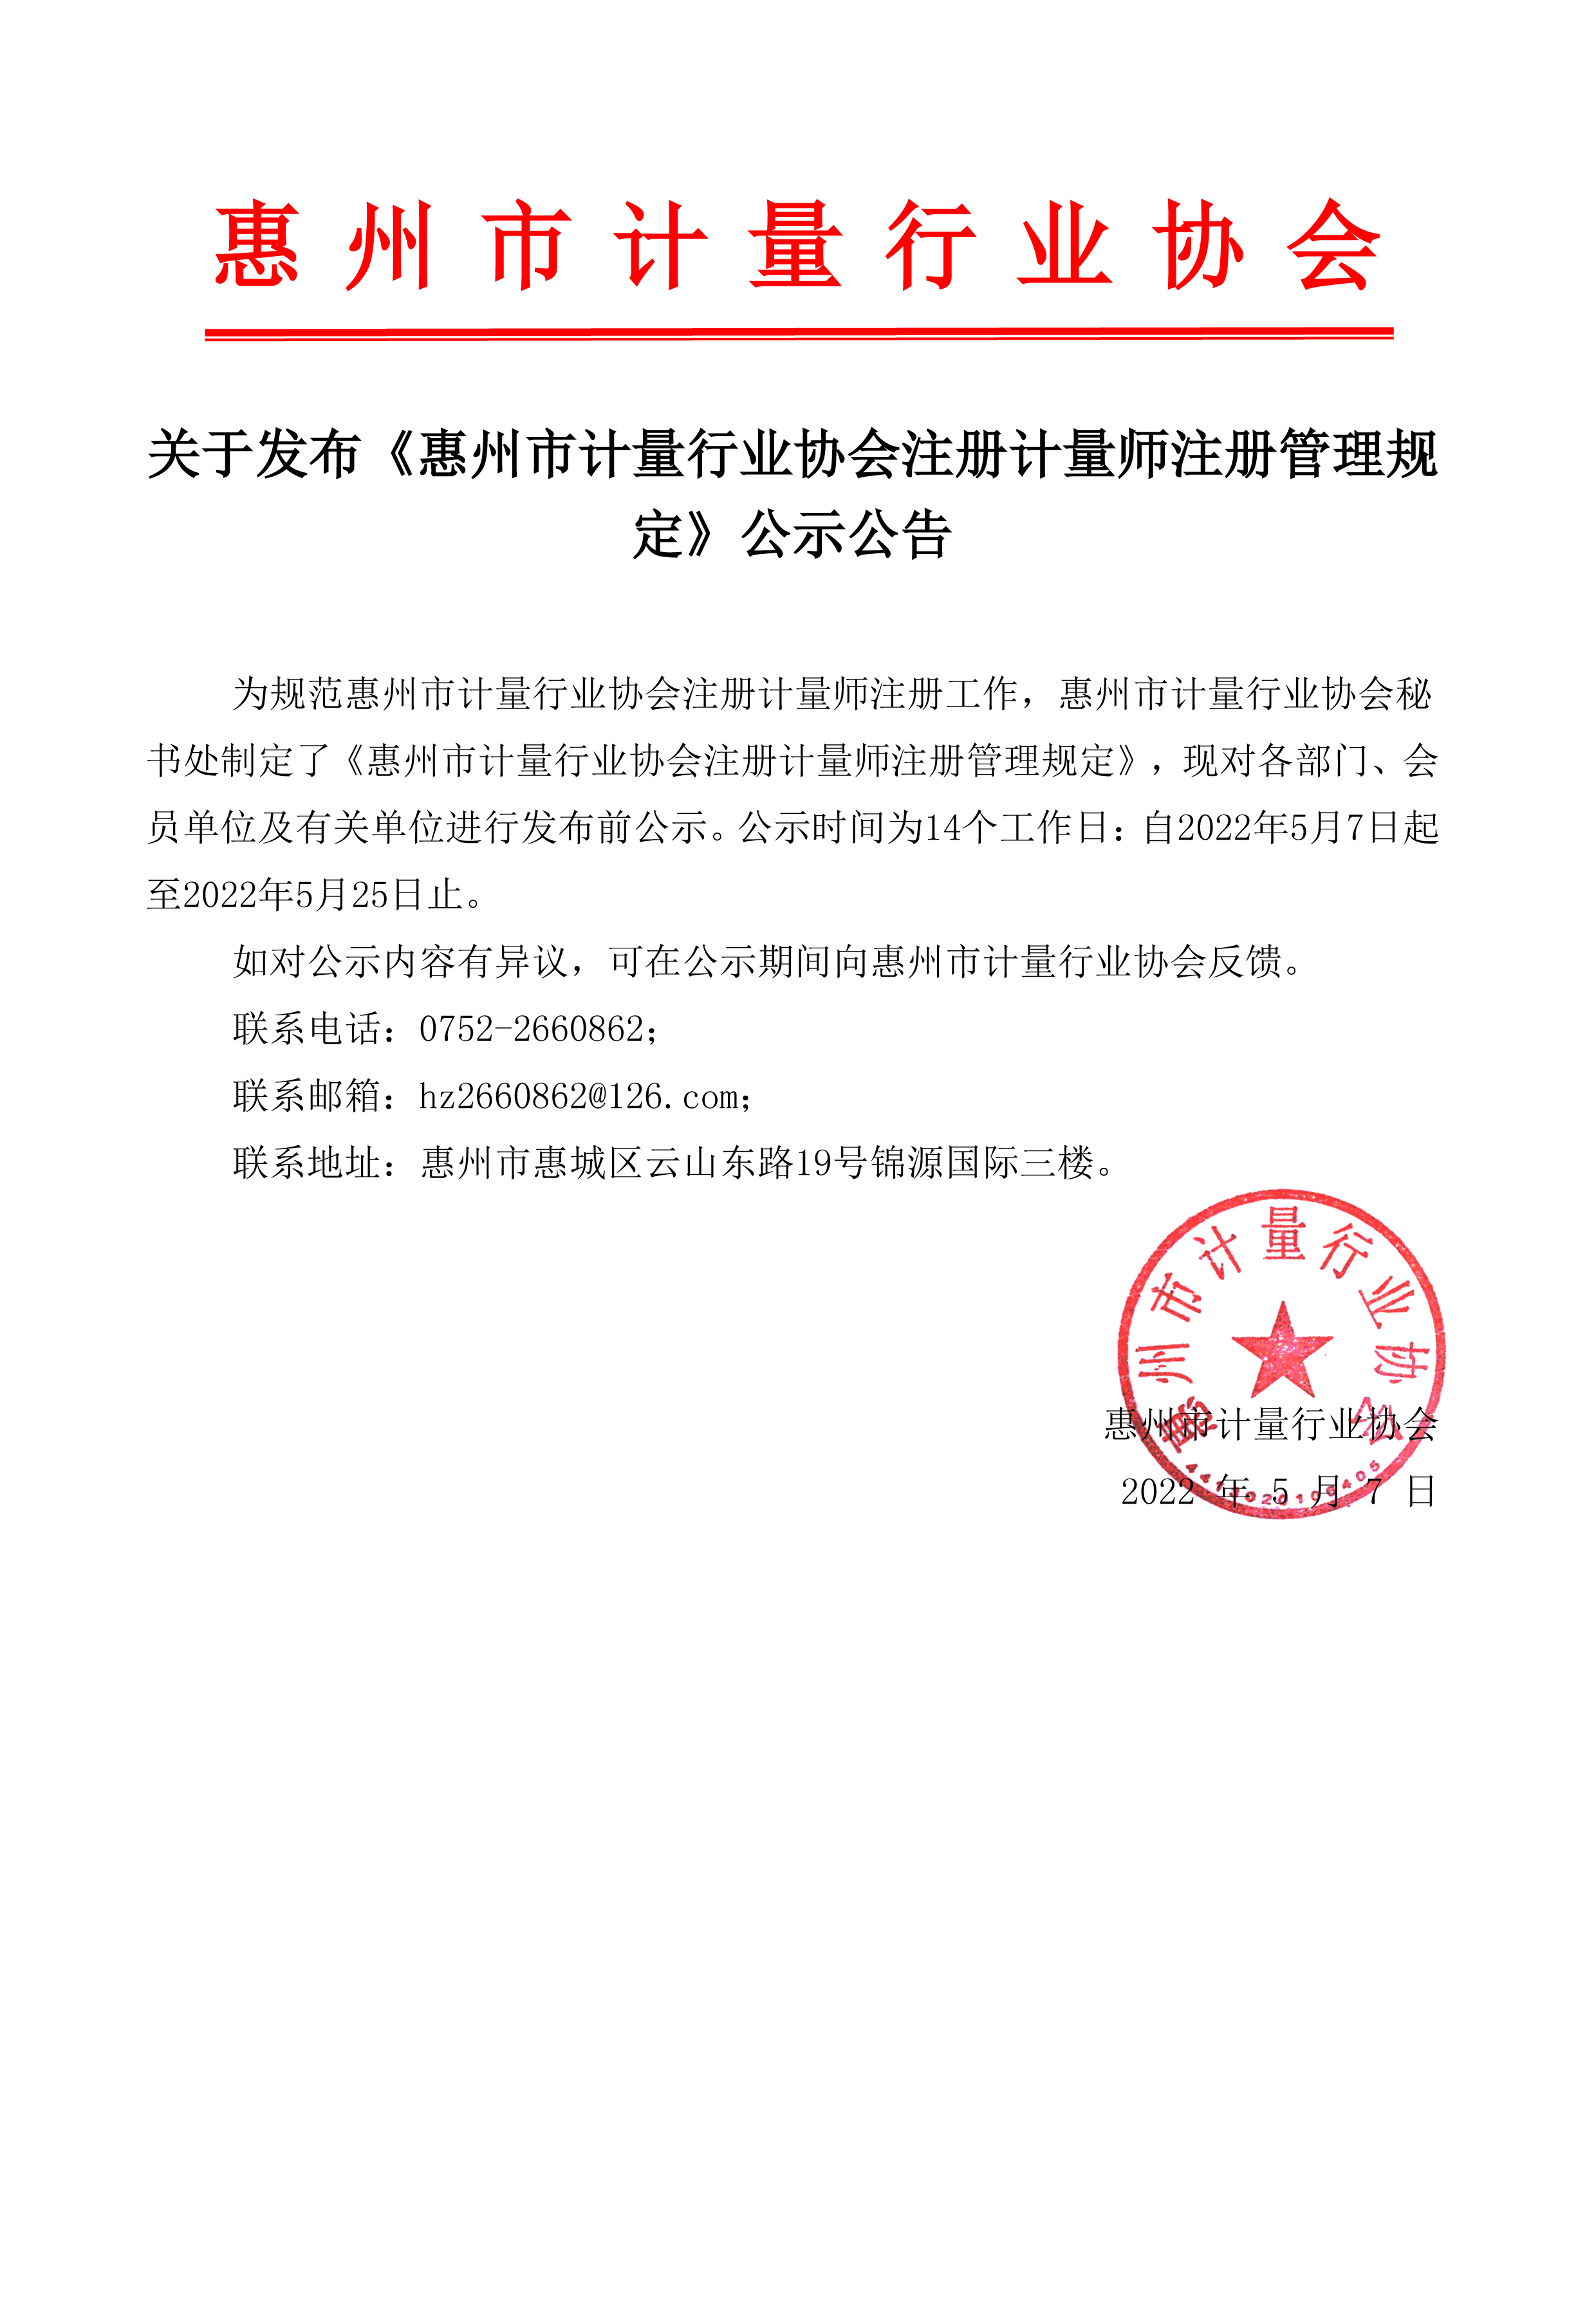 关于发布《惠州市计量行业协会注册计量师注册管理规定》公示公告(图1)